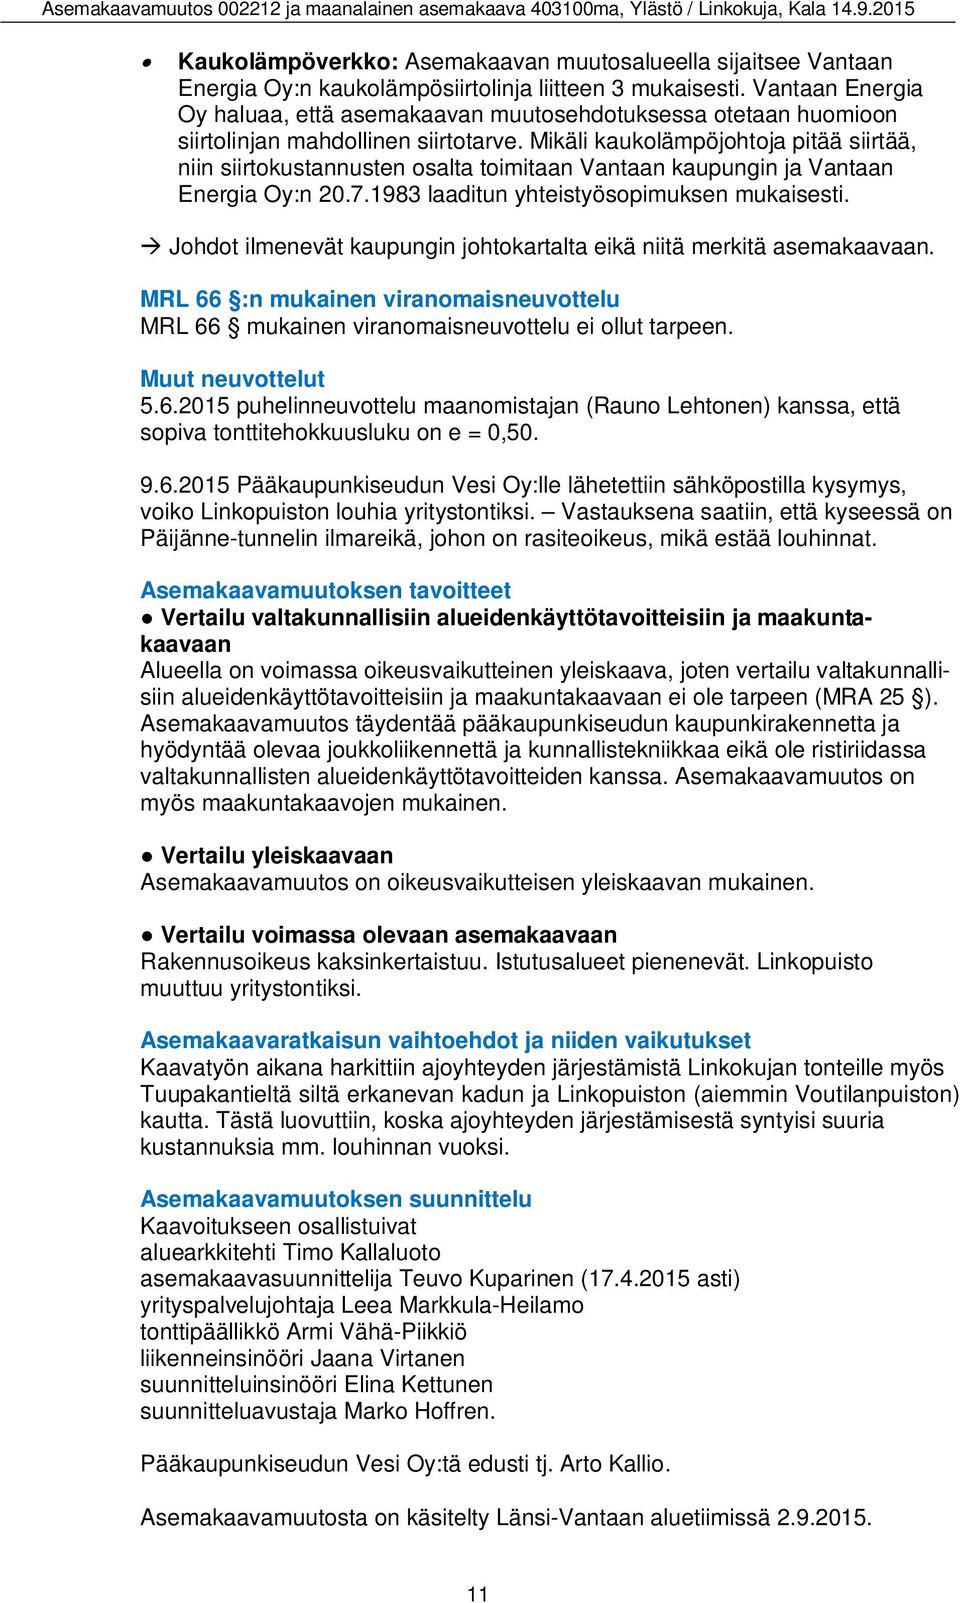 Mikäli kaukolämpöjohtoja pitää siirtää, niin siirtokustannusten osalta toimitaan Vantaan kaupungin ja Vantaan Energia Oy:n 20.7.1983 laaditun yhteistyösopimuksen mukaisesti.